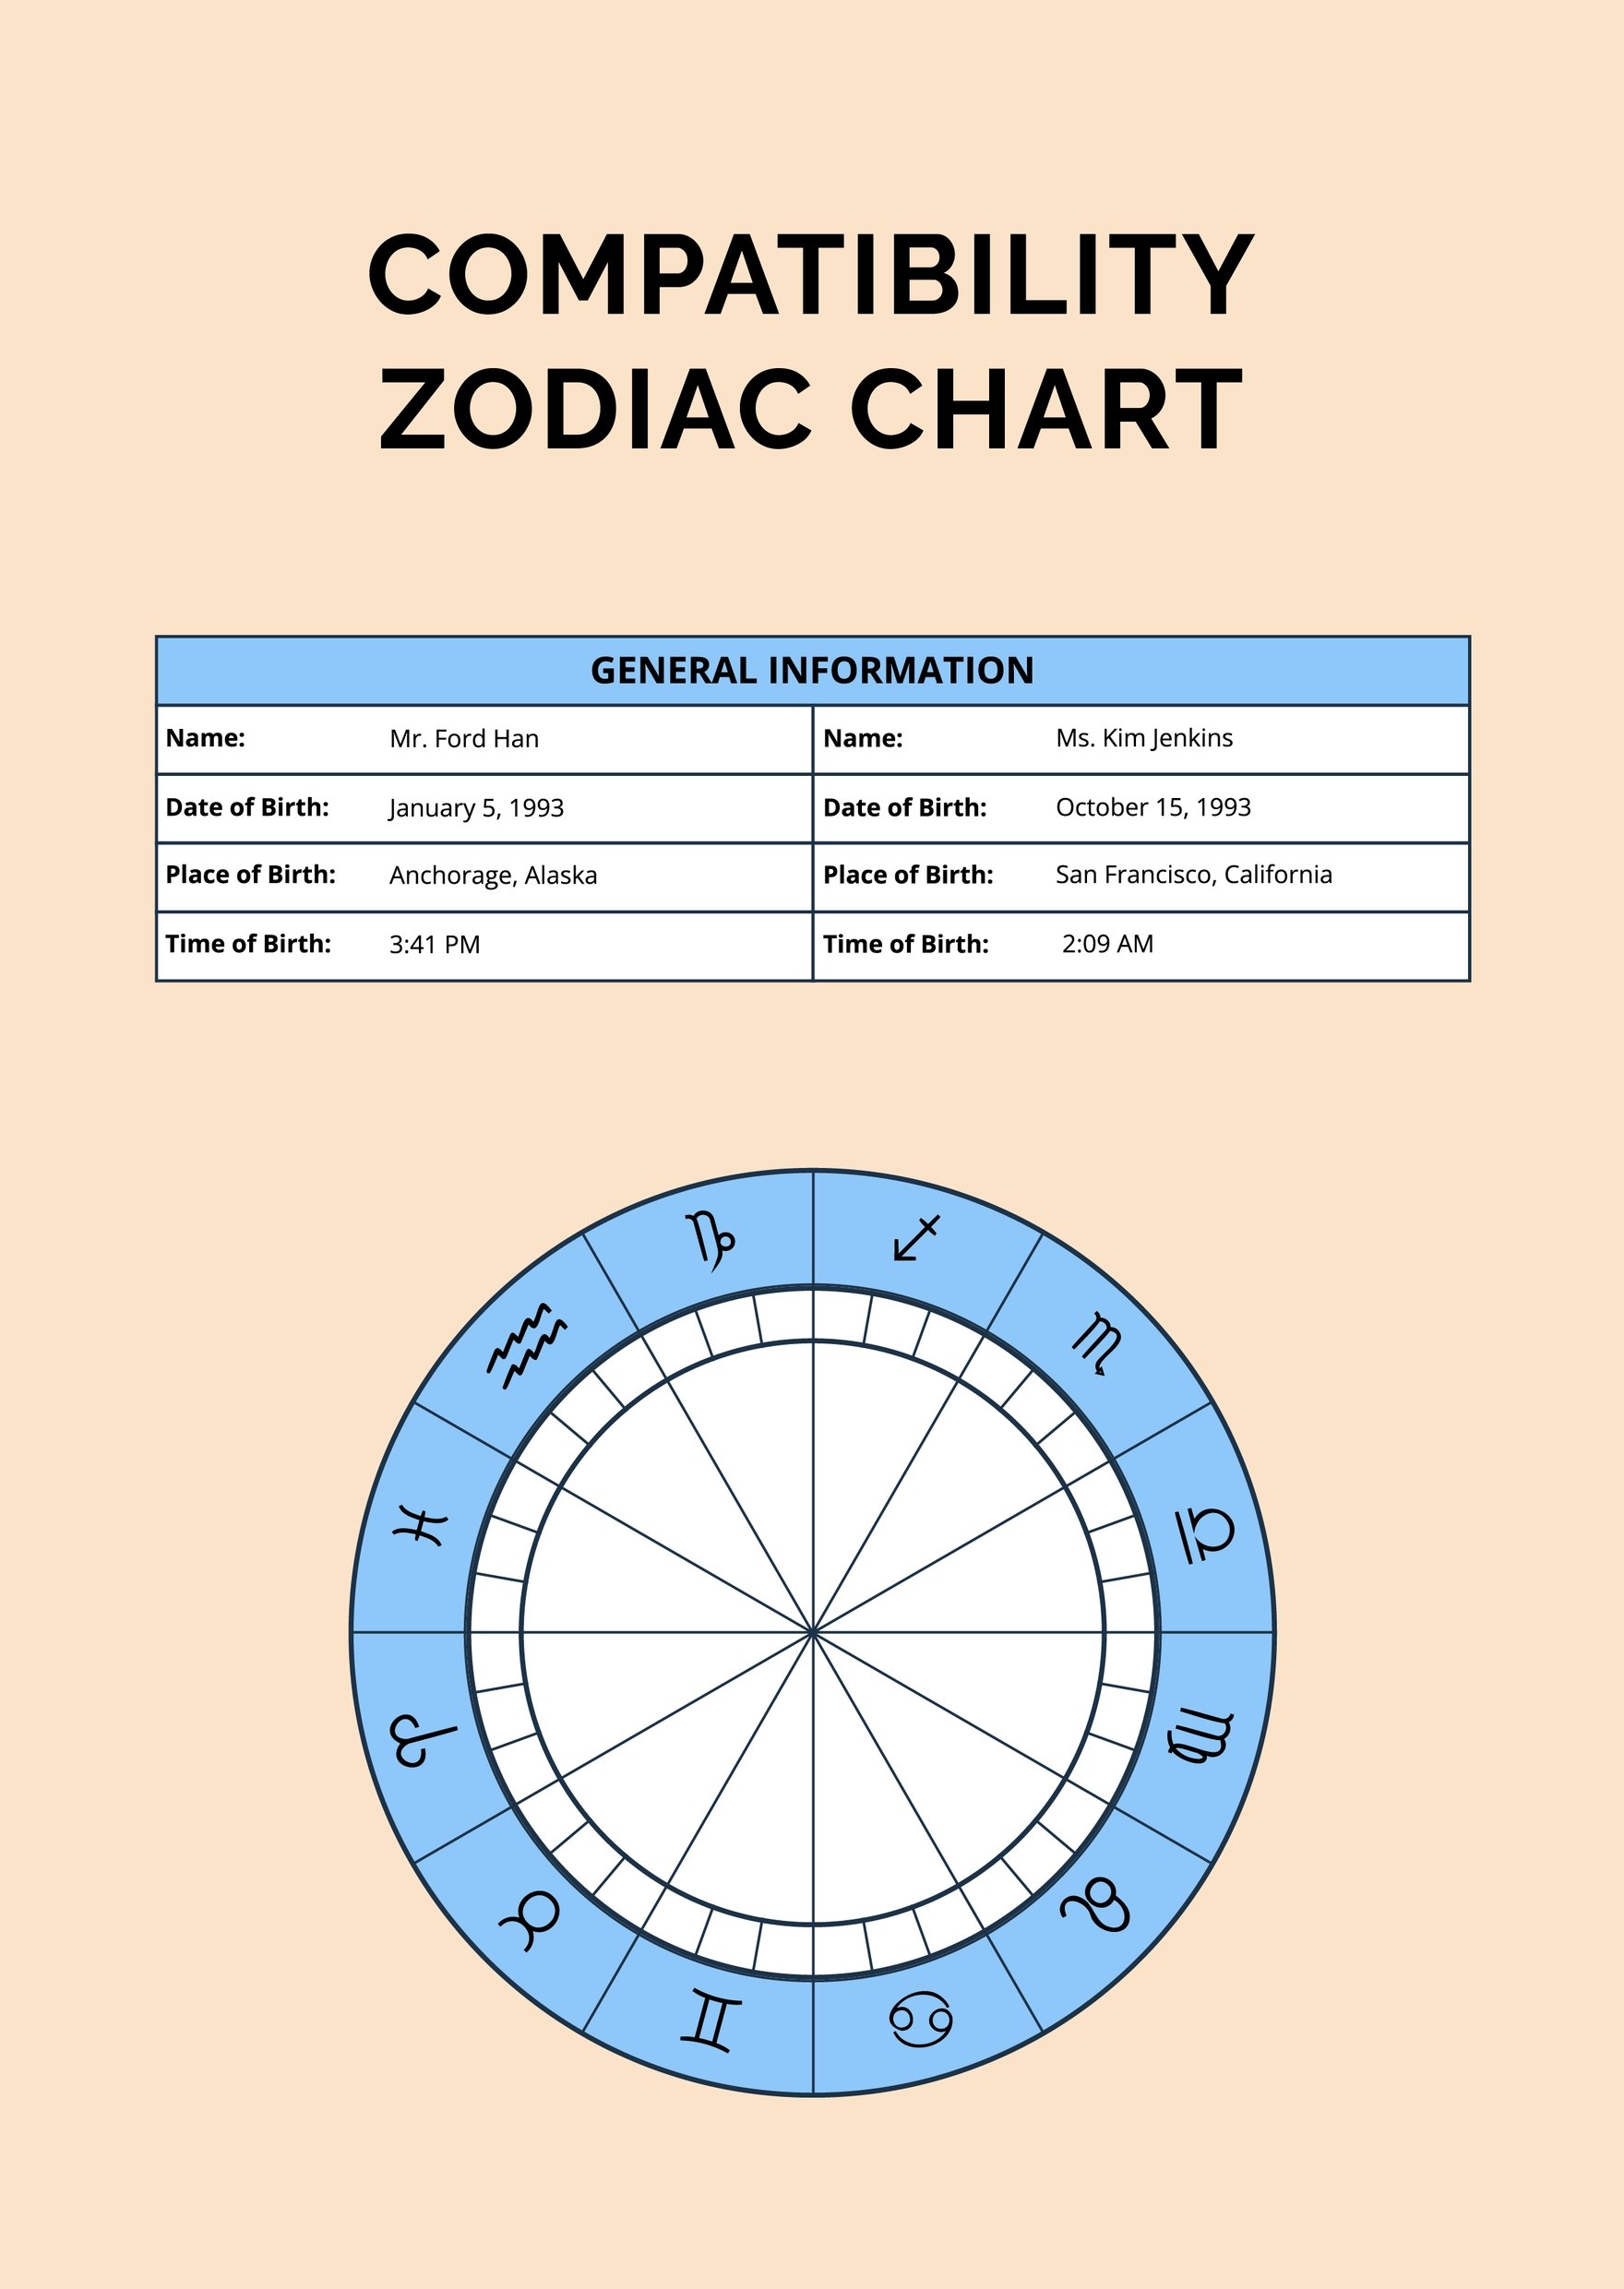 Compatibility Zodiac Chart Template in PDF, Illustrator